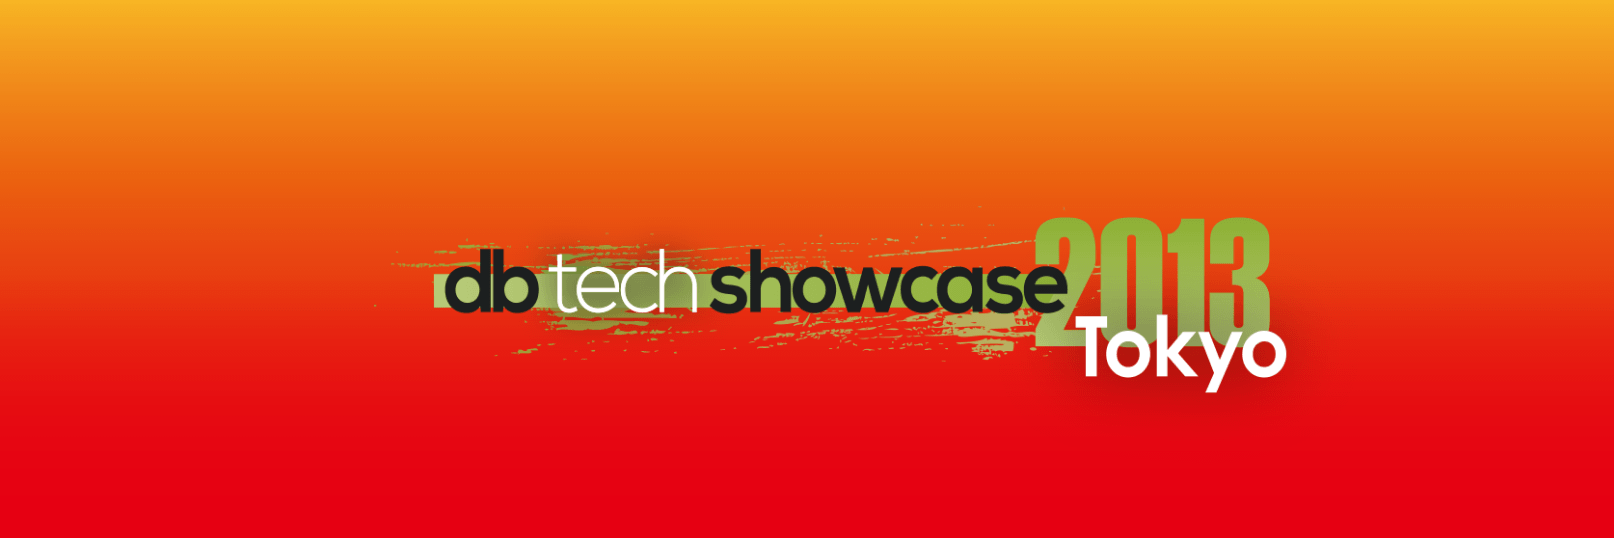 db tech showcase Tokyo 2013